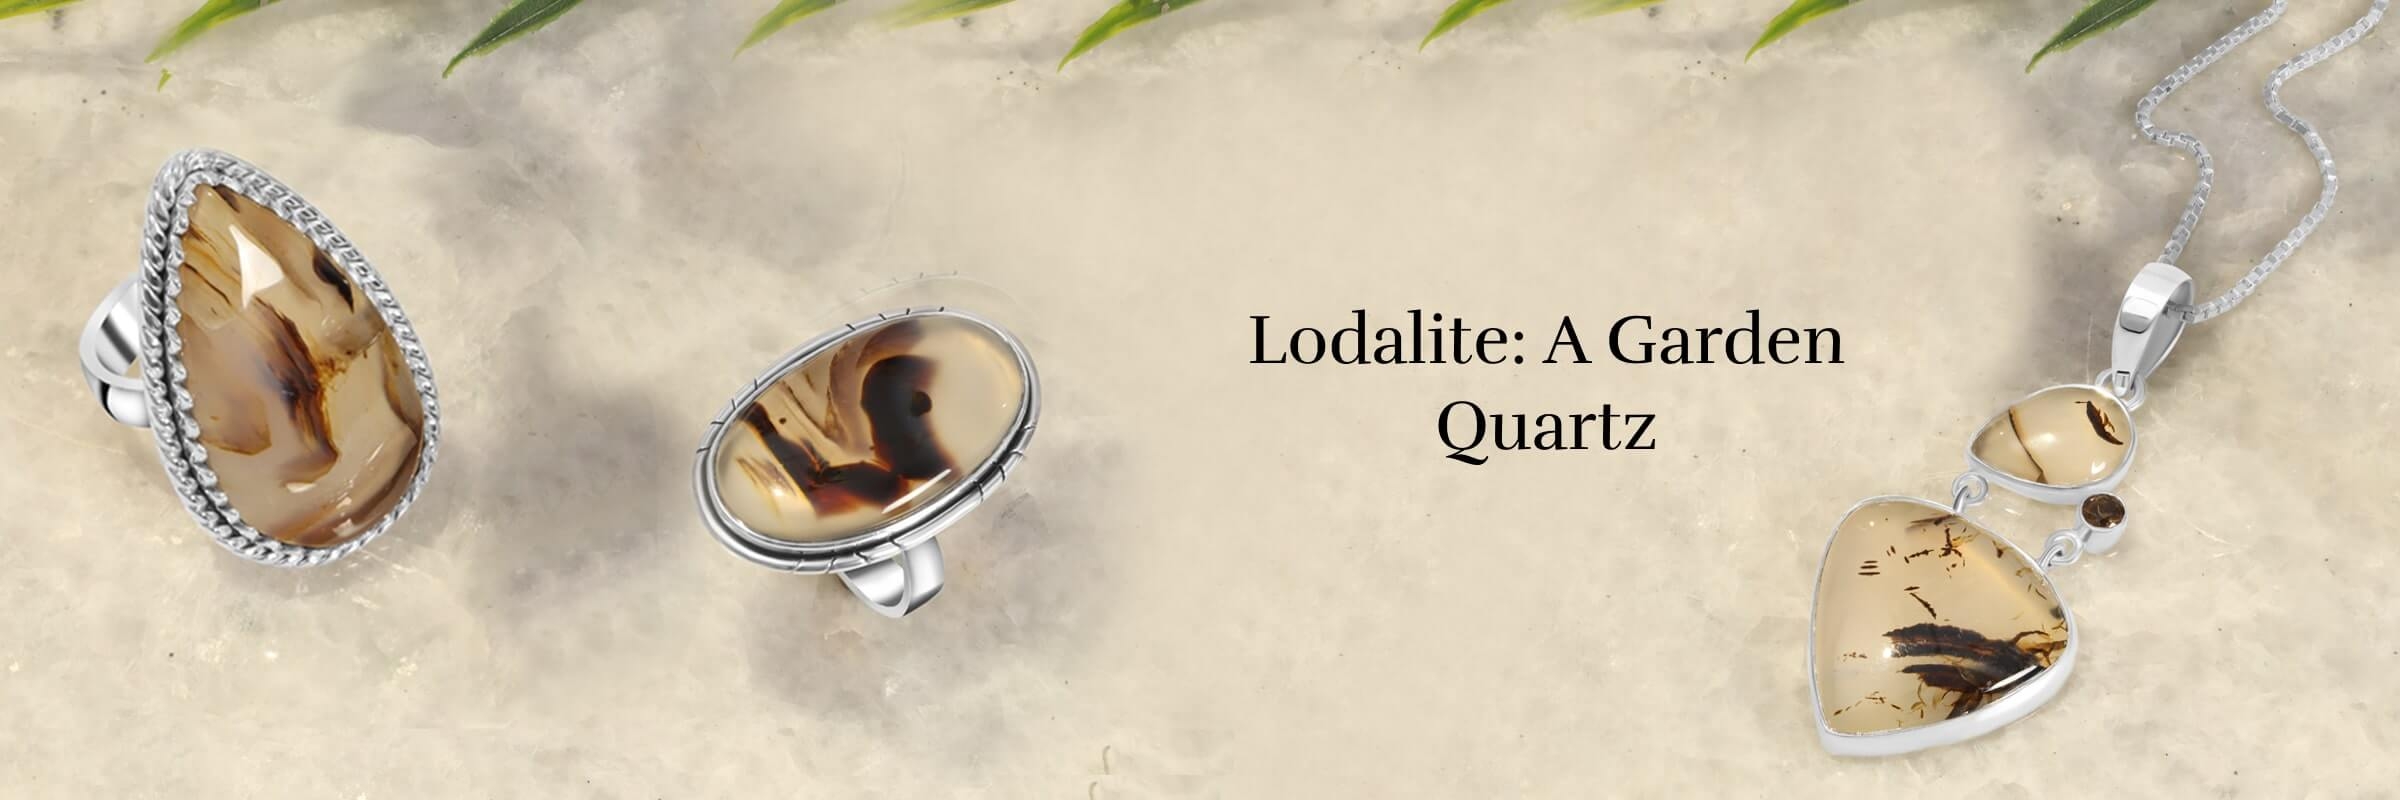 Healing properties of lodolite